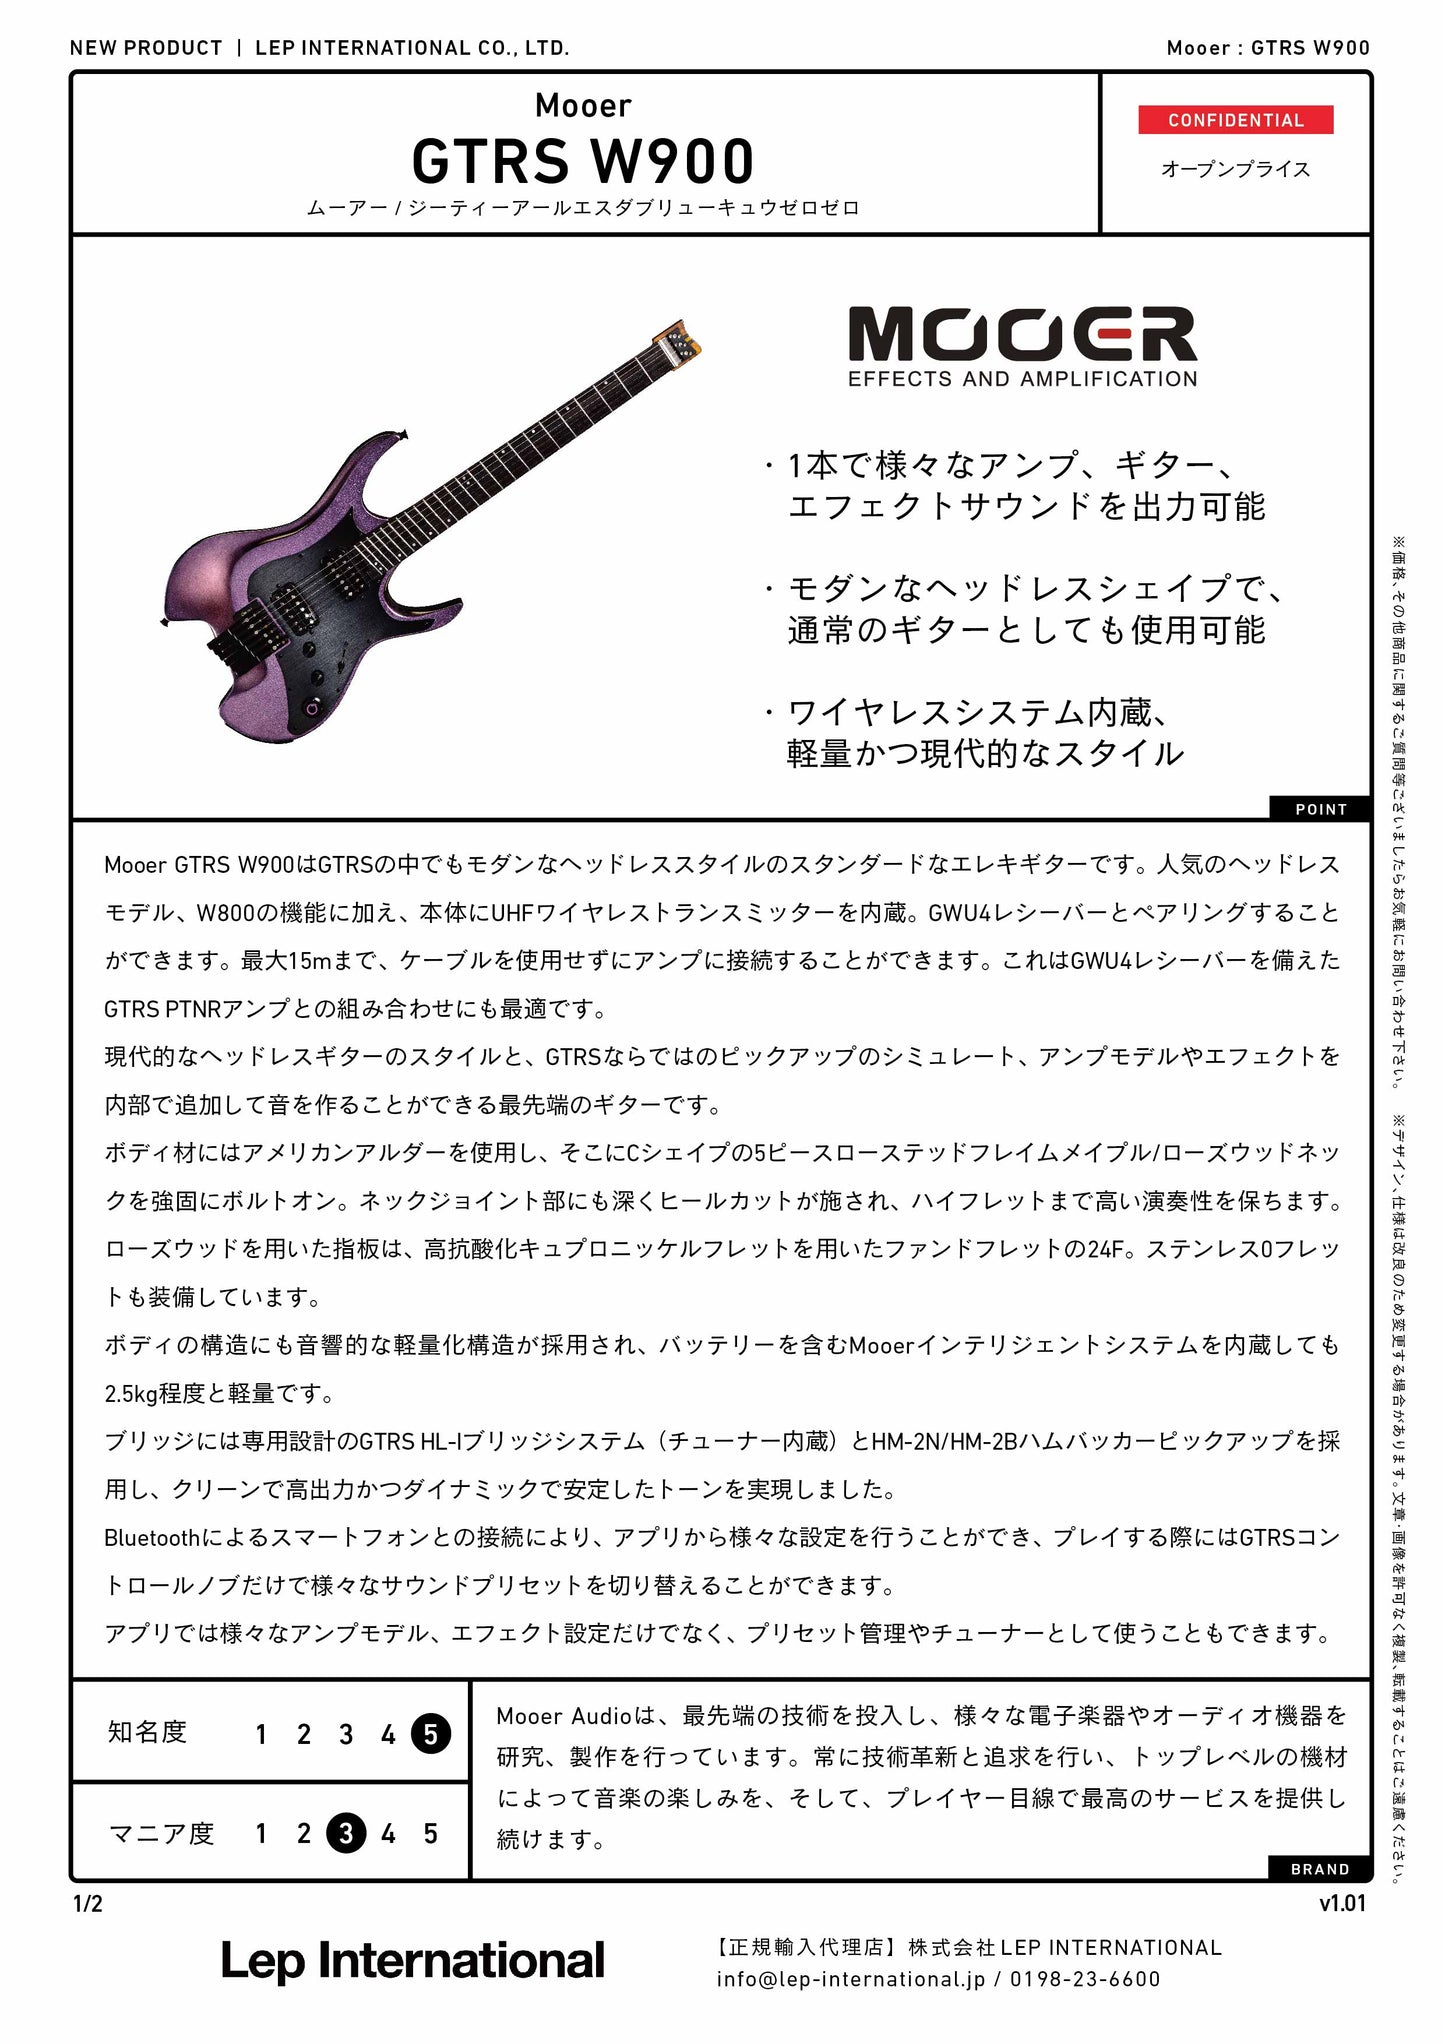 Mooer/GTRS W900